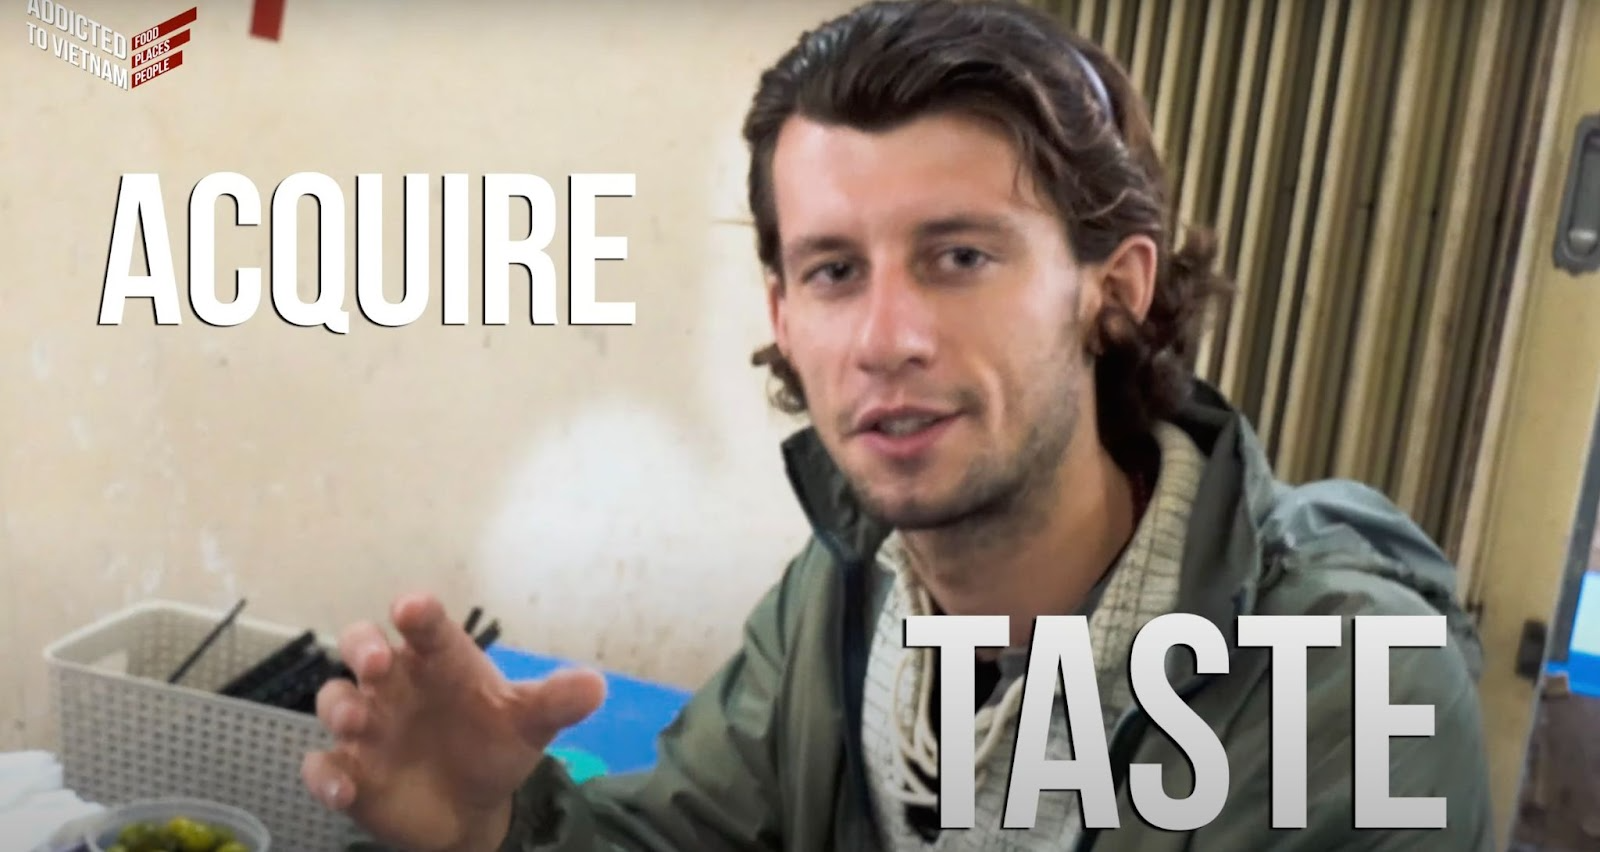 Du khách người Anh hướng dẫn ăn bún đậu mắm tôm trên Youtube: Món này càng ăn càng nghiện - Ảnh 2.